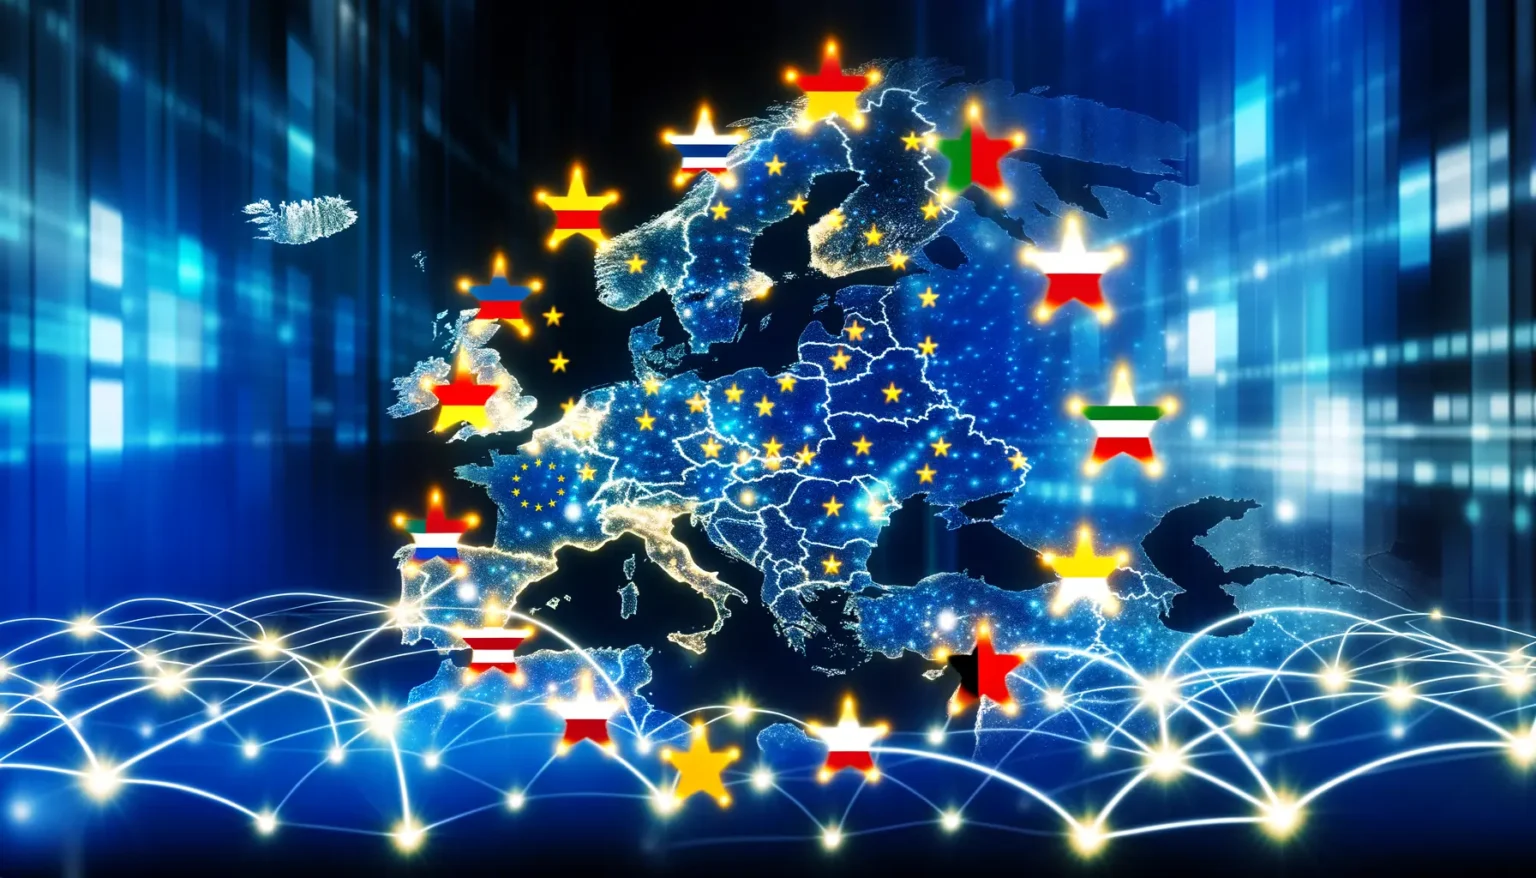 Eine stilisierte Darstellung Europas mit den Ländergrenzen, die durch leuchtende Sterne mit Netzwerkmustern und digitalen Datenströmen über einem blauen Hintergrund hervorgehoben sind. Über jedem Land schwebt ein Stern in der Farbe der jeweiligen Nationalflagge.